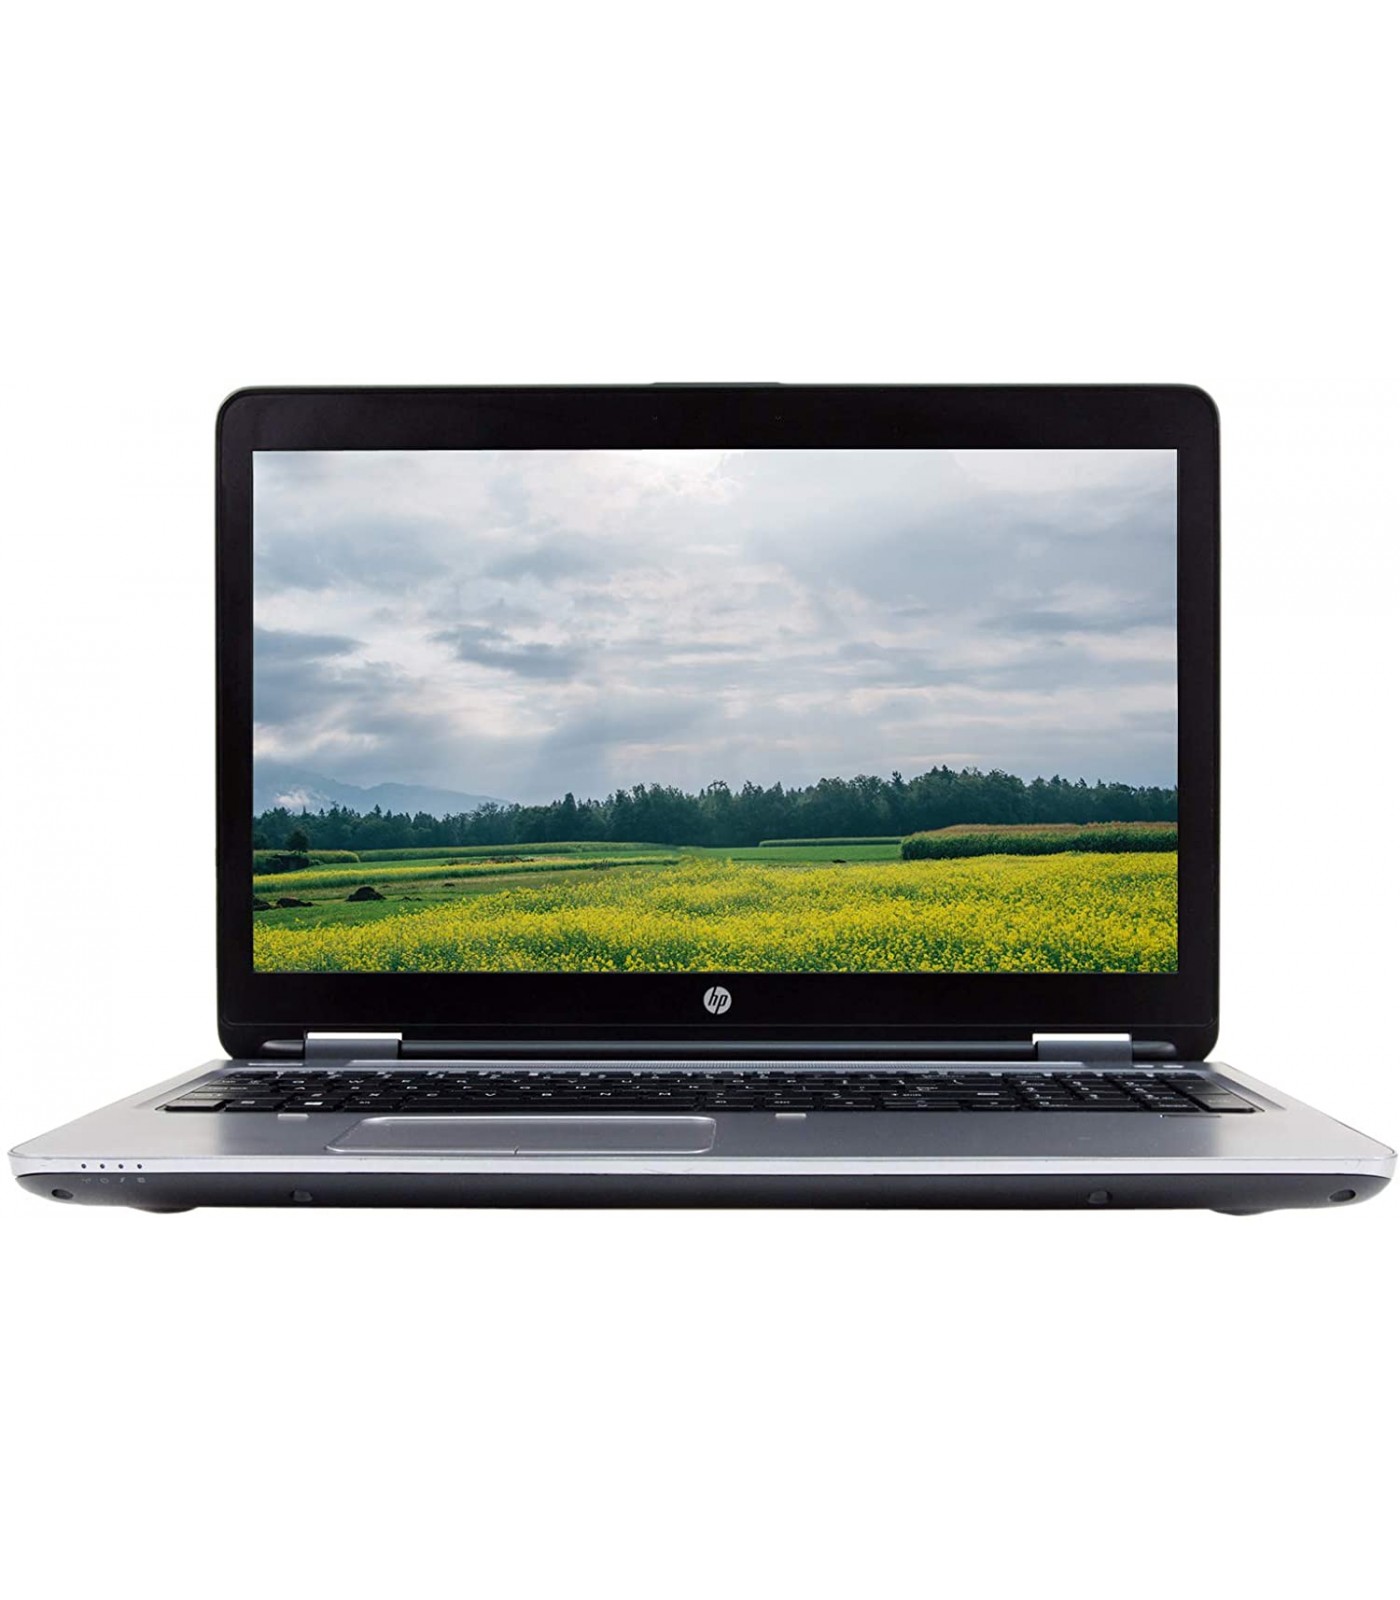 Poleasingowy laptop HP ProBook 650 G2 i3-6100U w klasie A